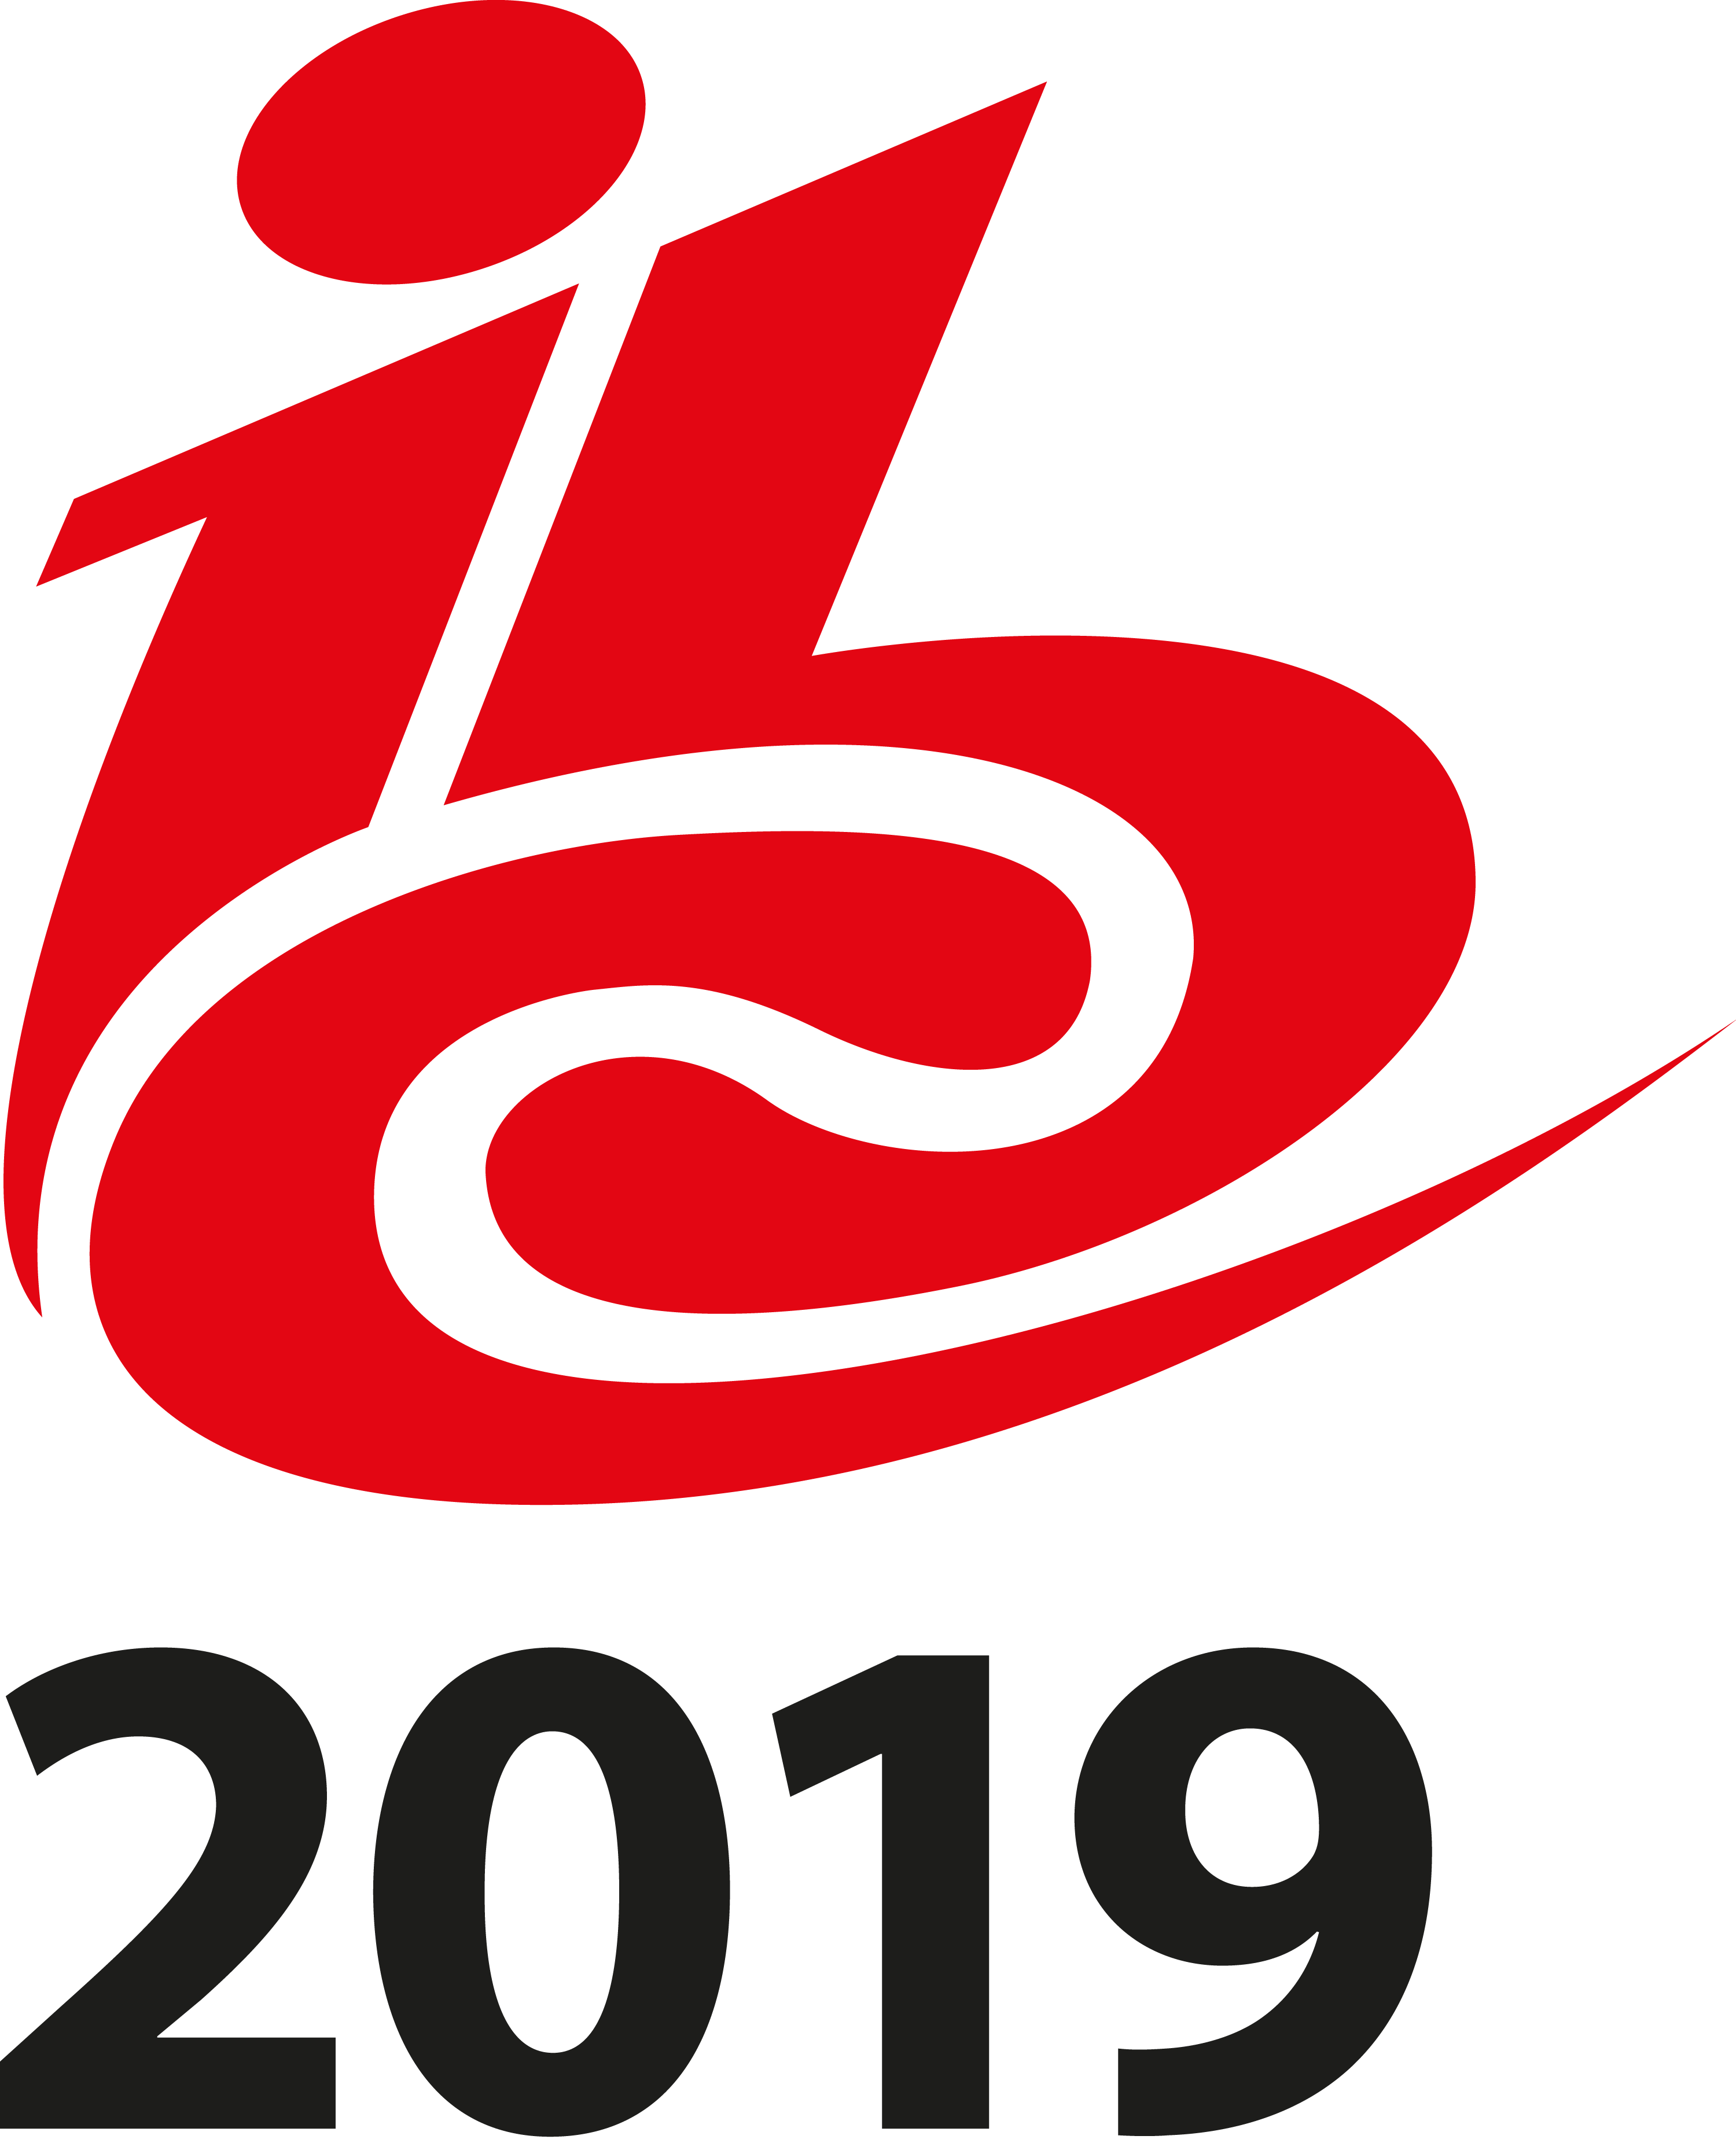 IBC2019 ロゴ